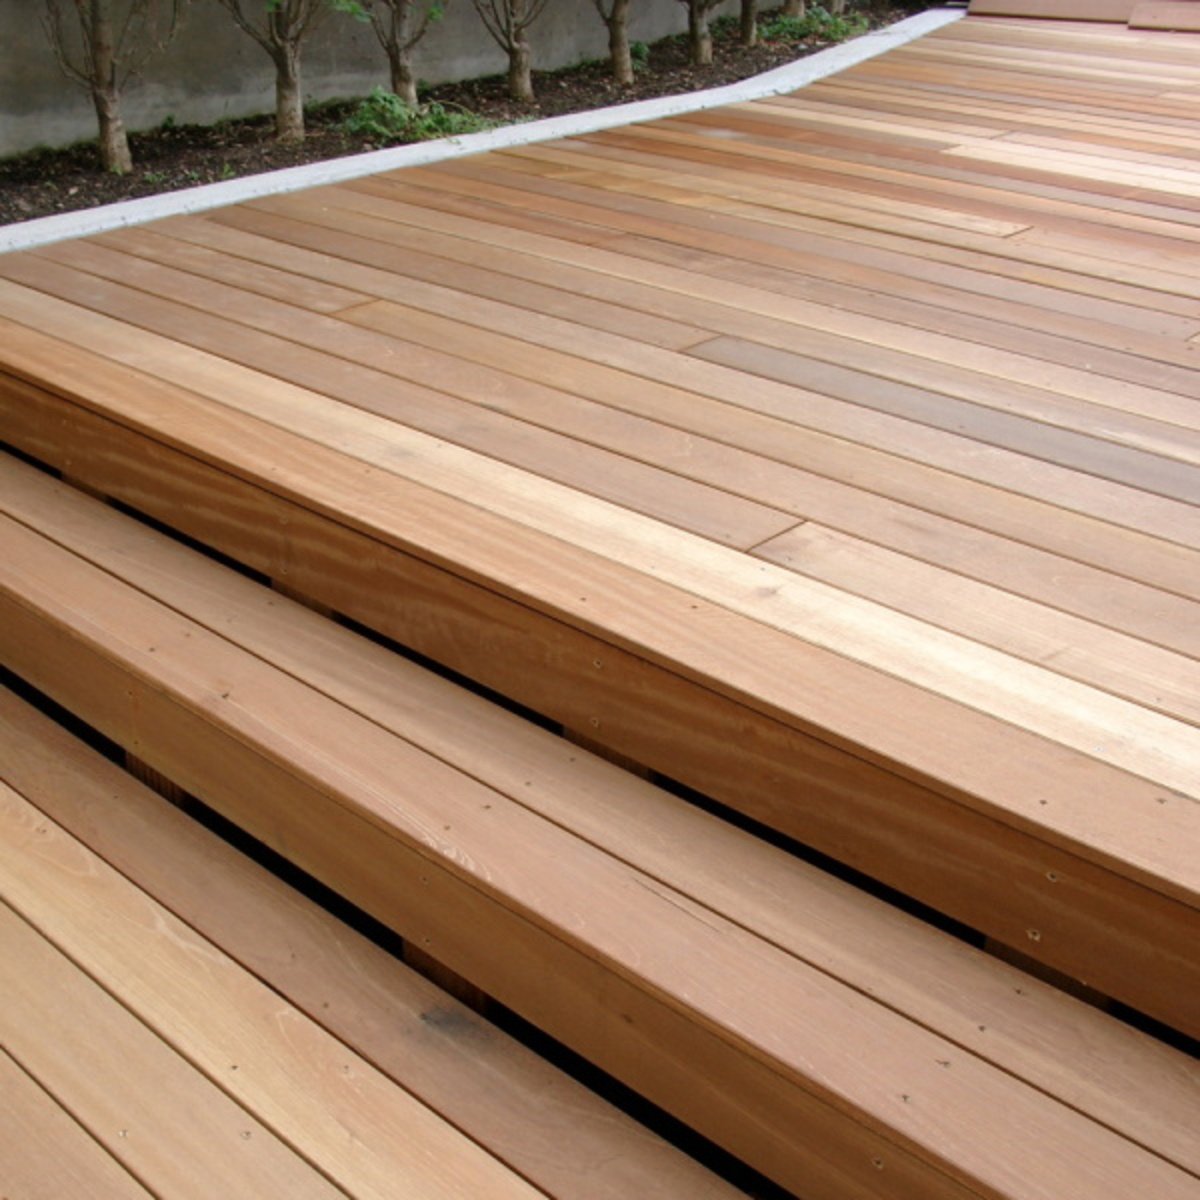 Red Balau Bangkirai hardwood for decking